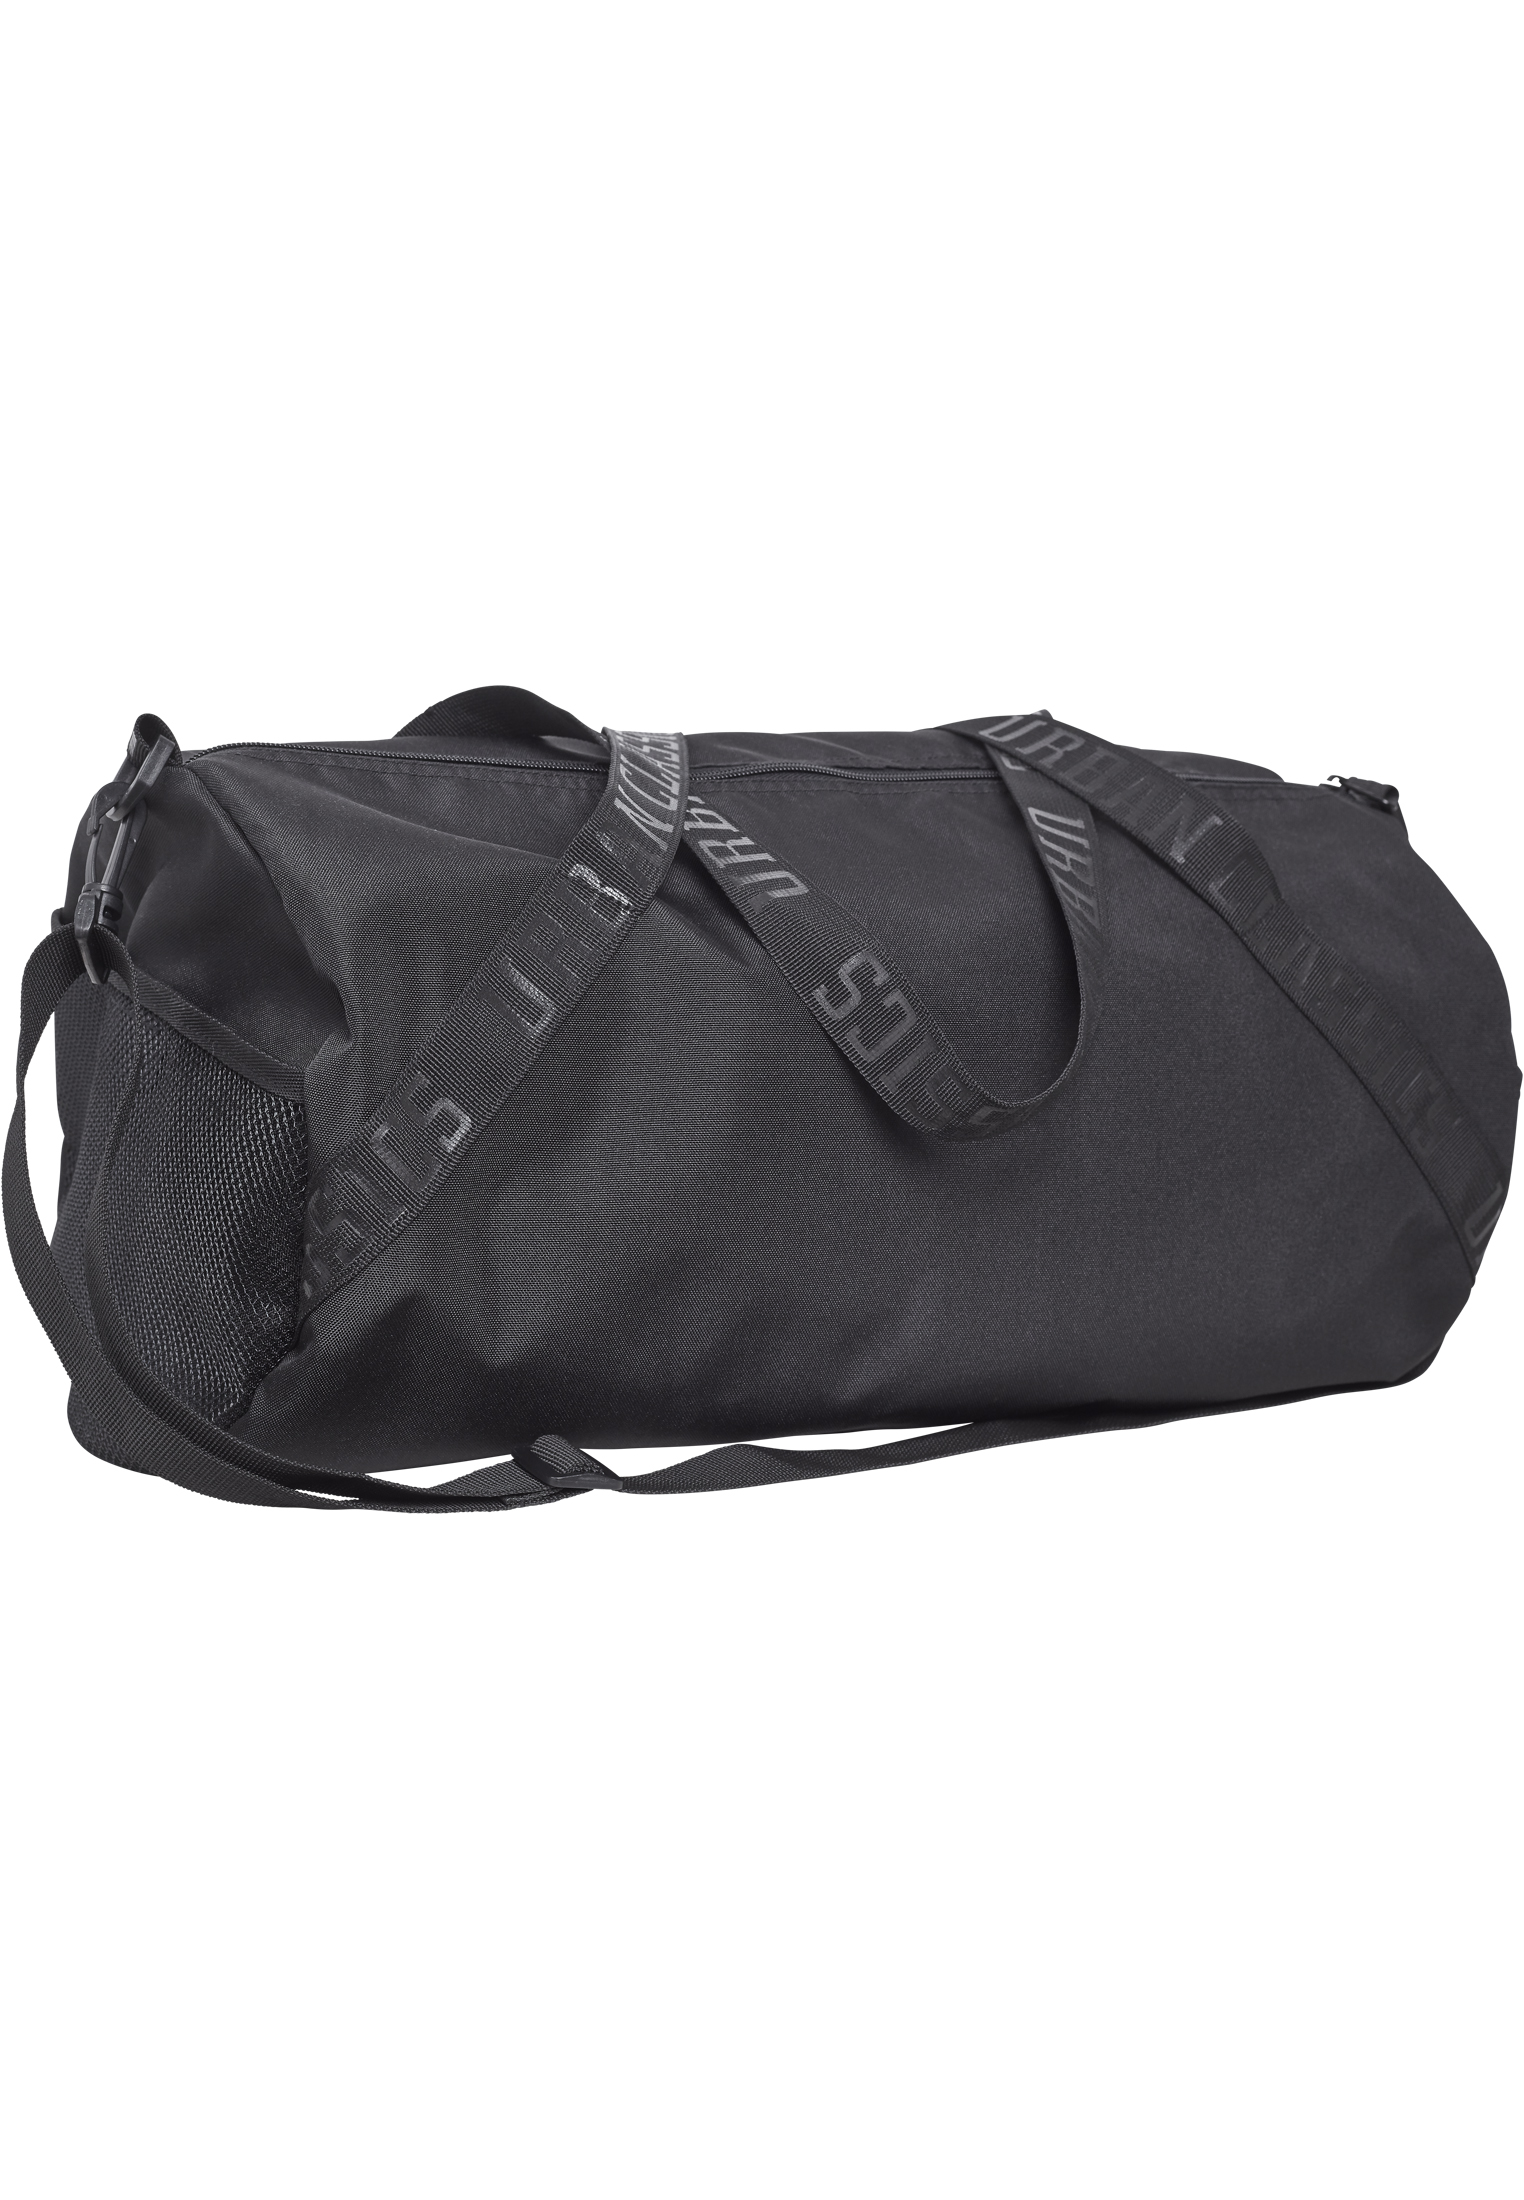 Taschen Sports Bag in Farbe black